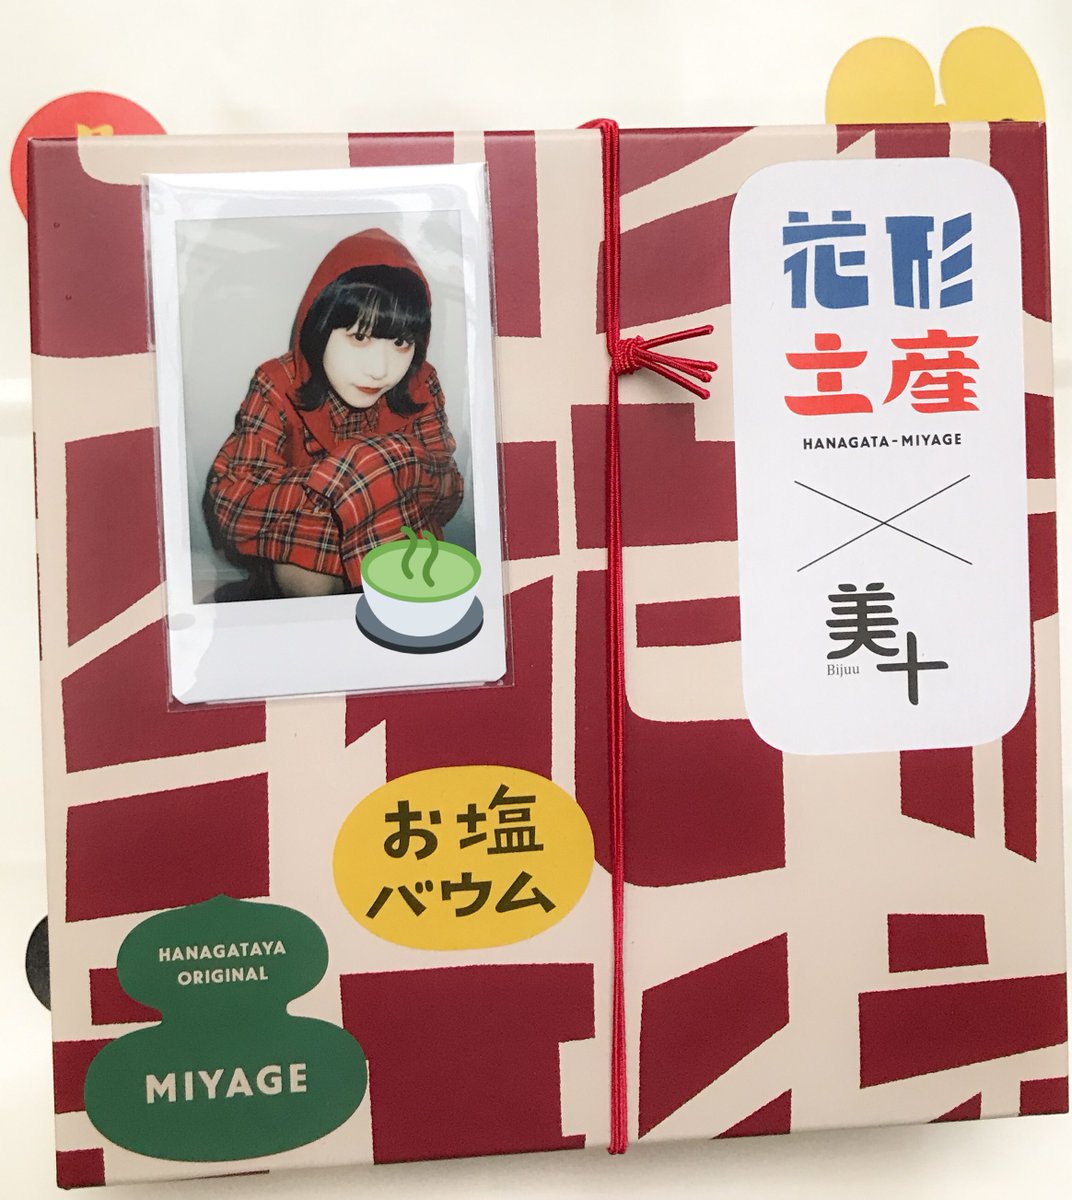 test ツイッターメディア - トギーちゃん、
東京駅で見つけた限定ものだよ！

“おたべ”“京ばあむ”の美十とのコラボ、
買わない理由がなかったです。 https://t.co/vmdl8fJZKM